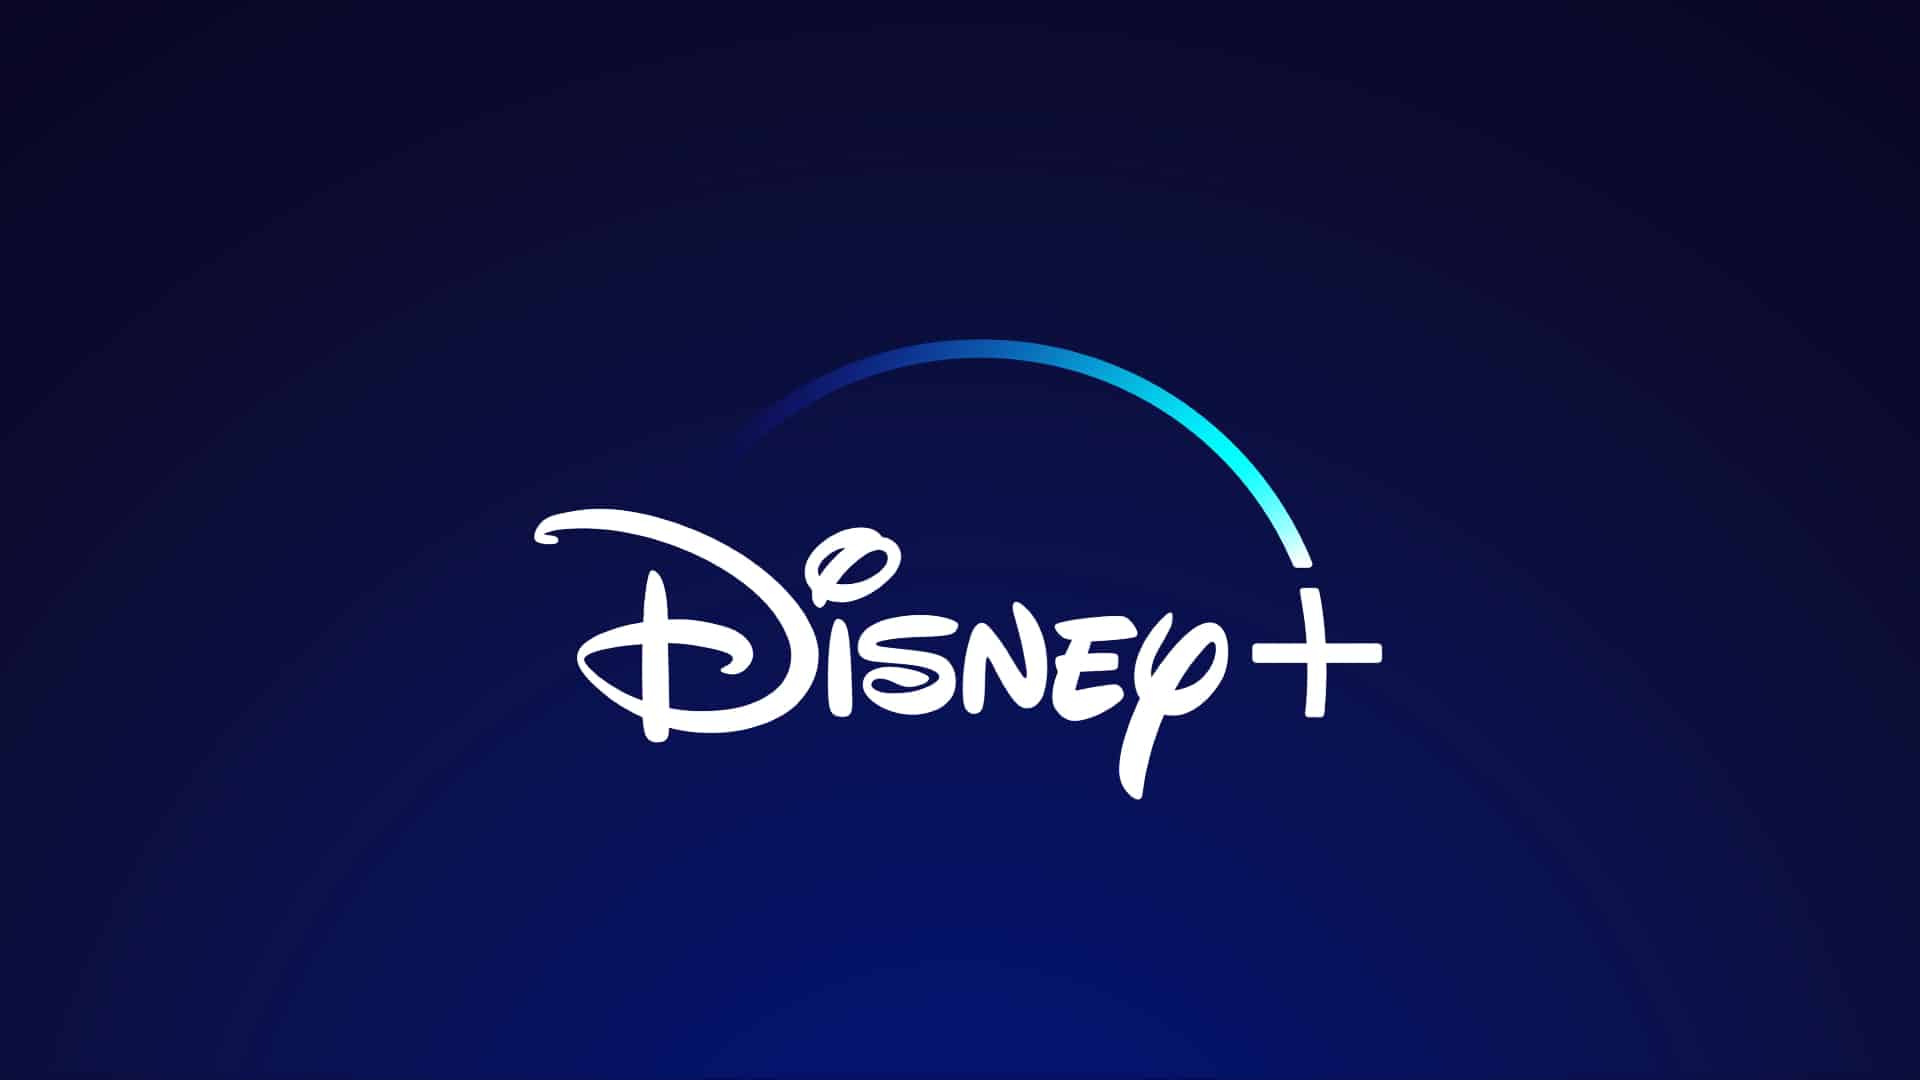 Disney+ vient d'accueillir près de trois millions d'utilisateurs et à l'intention de dépasser Netflix d'ici à quatre ans.